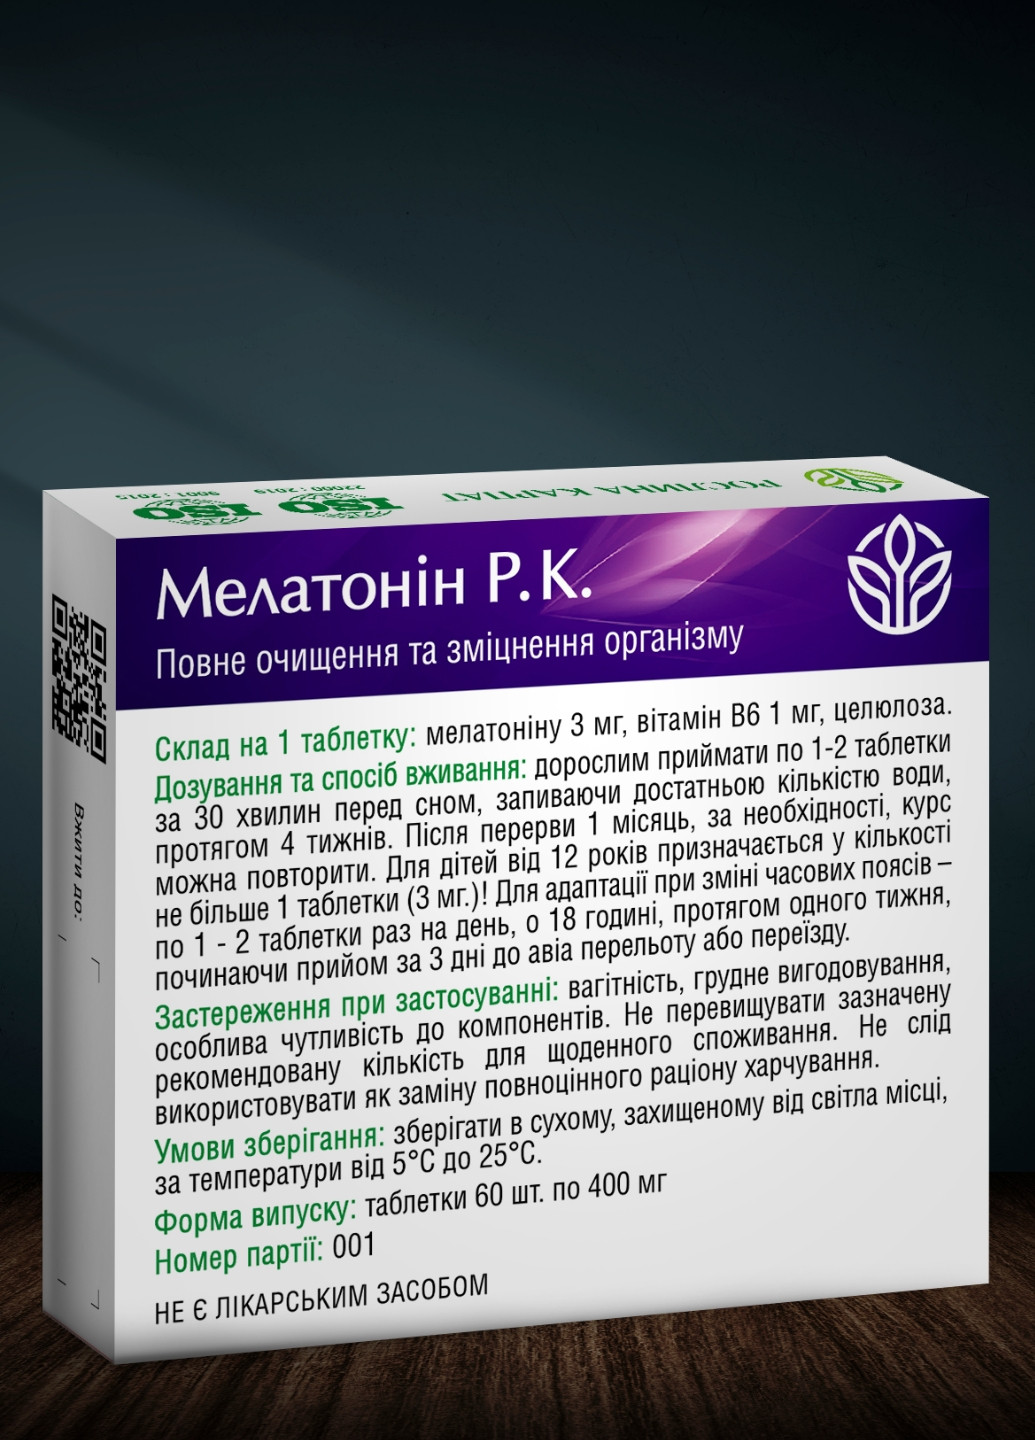 Мелатонин Р.К. 60 таблеток | Комплекс при расстройствах сна Рослина Карпат (277813535)